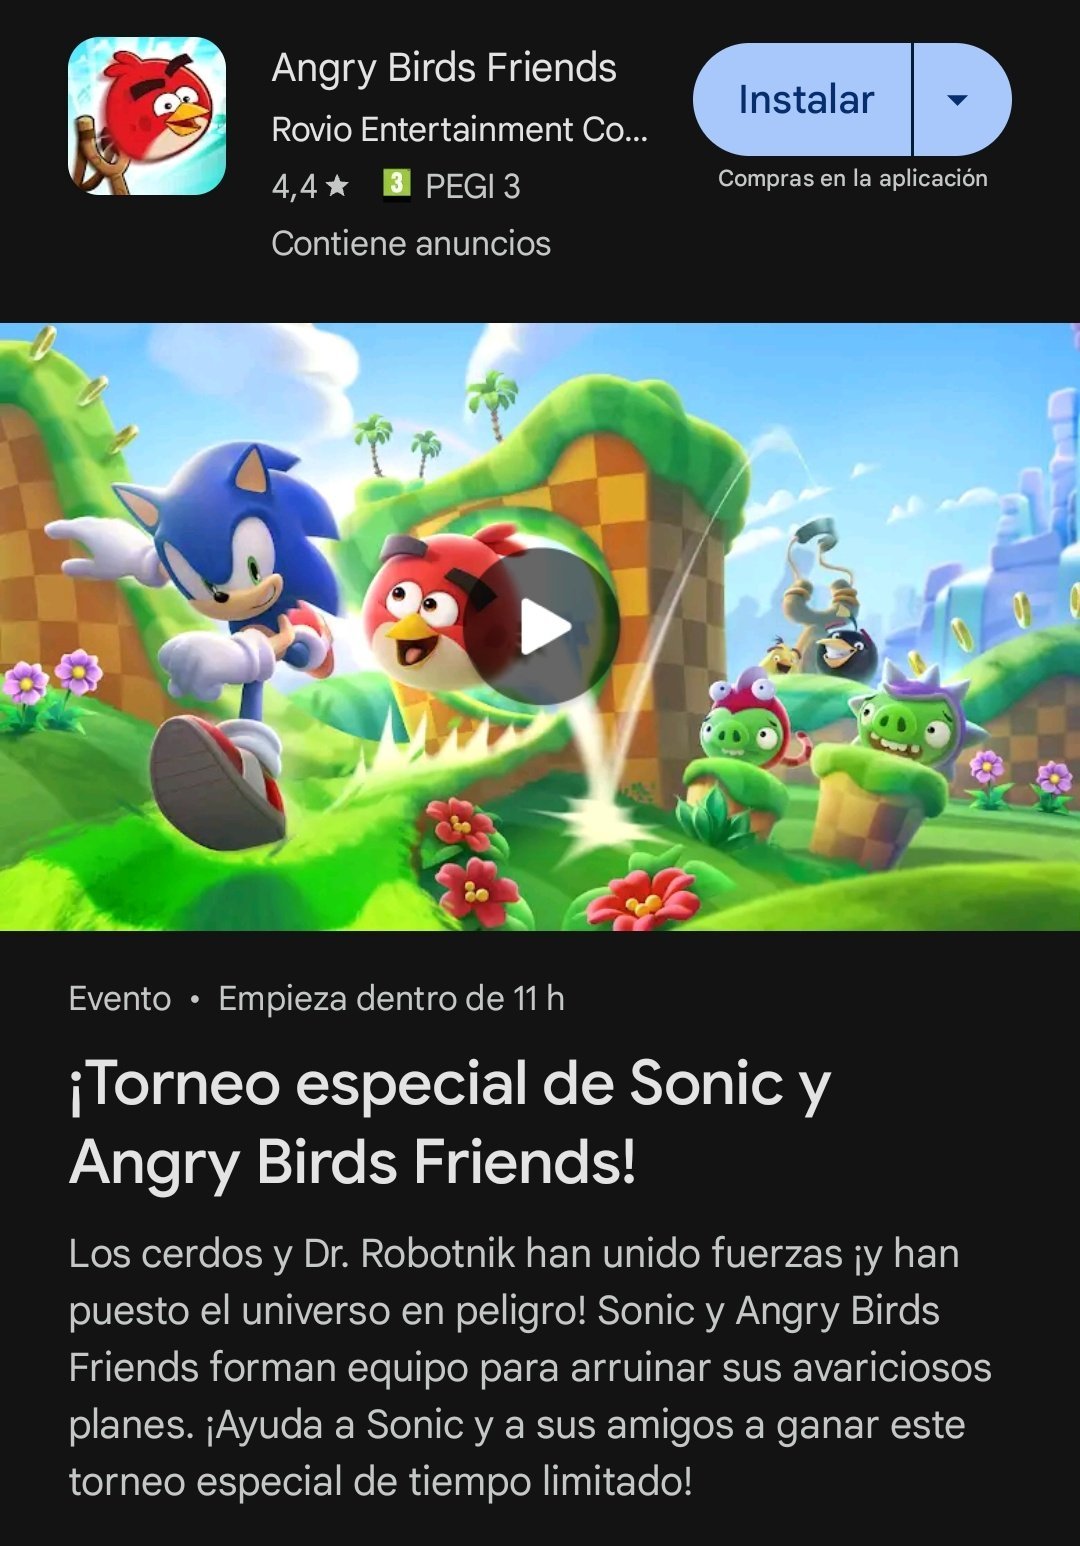 Sonic The Hedgehog x Angry Birds anuncian colaboración,¿Nuevo juego en camino? 10